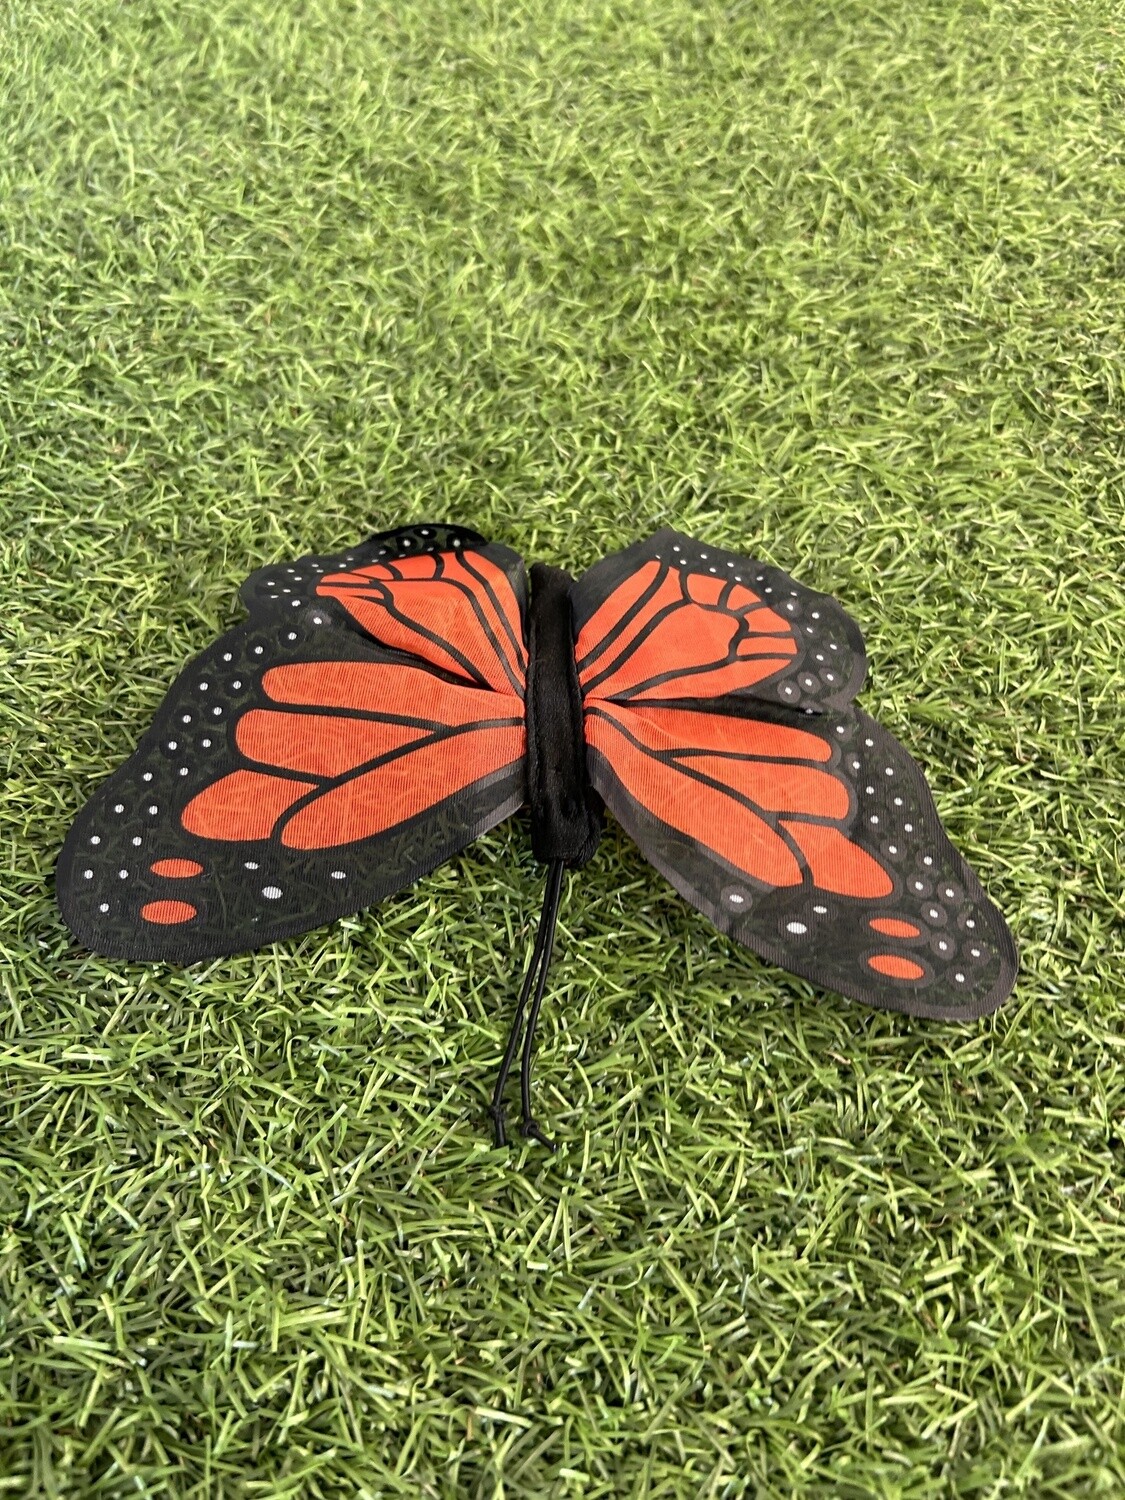 Mini monarch butterfly